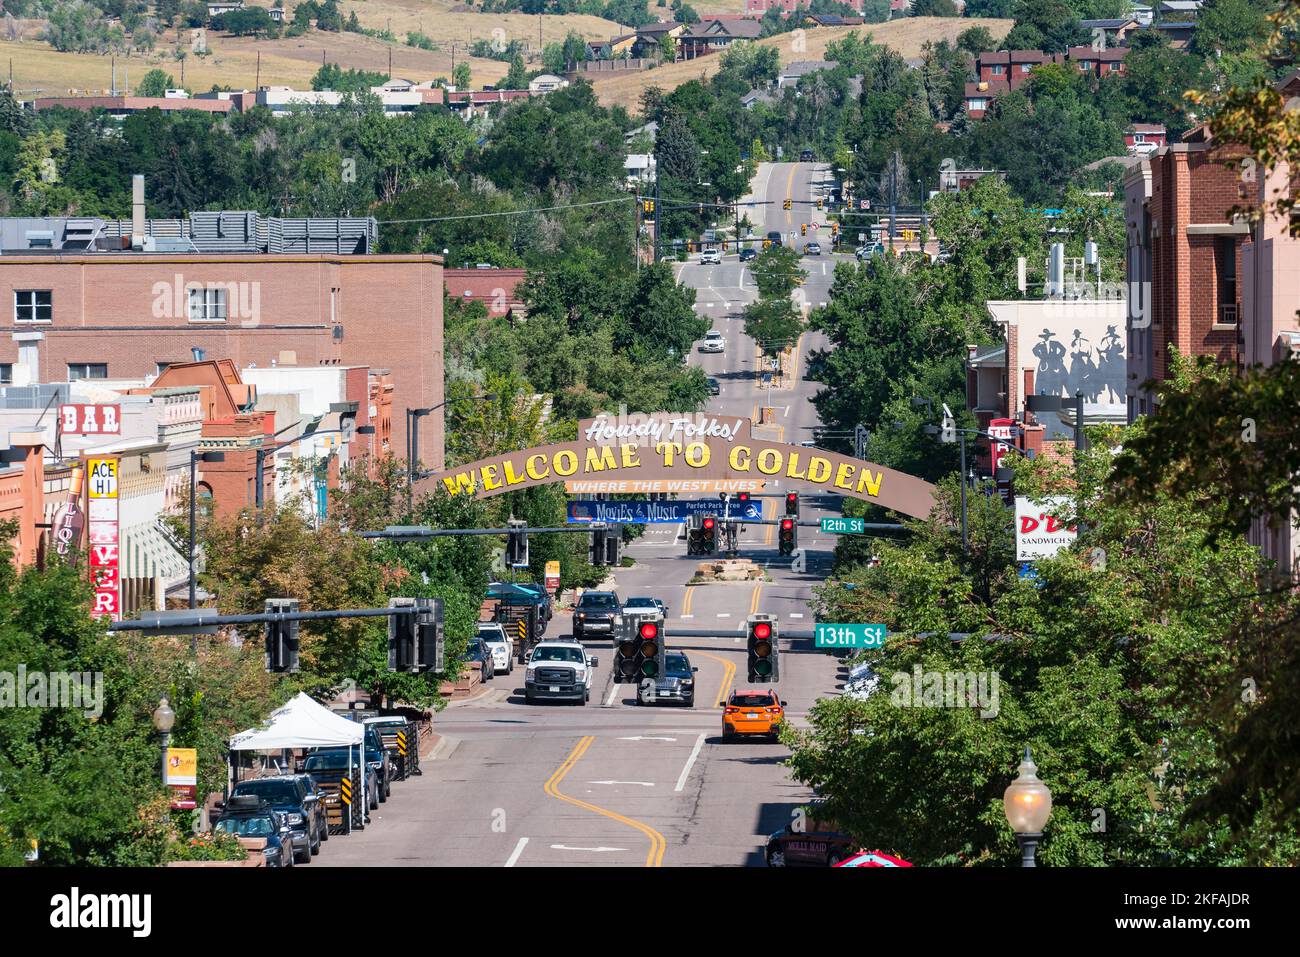 Golden, Colorado - August 8, 2022: Welcome to Golden sign along Washington street in Golden Colorado Stock Photo